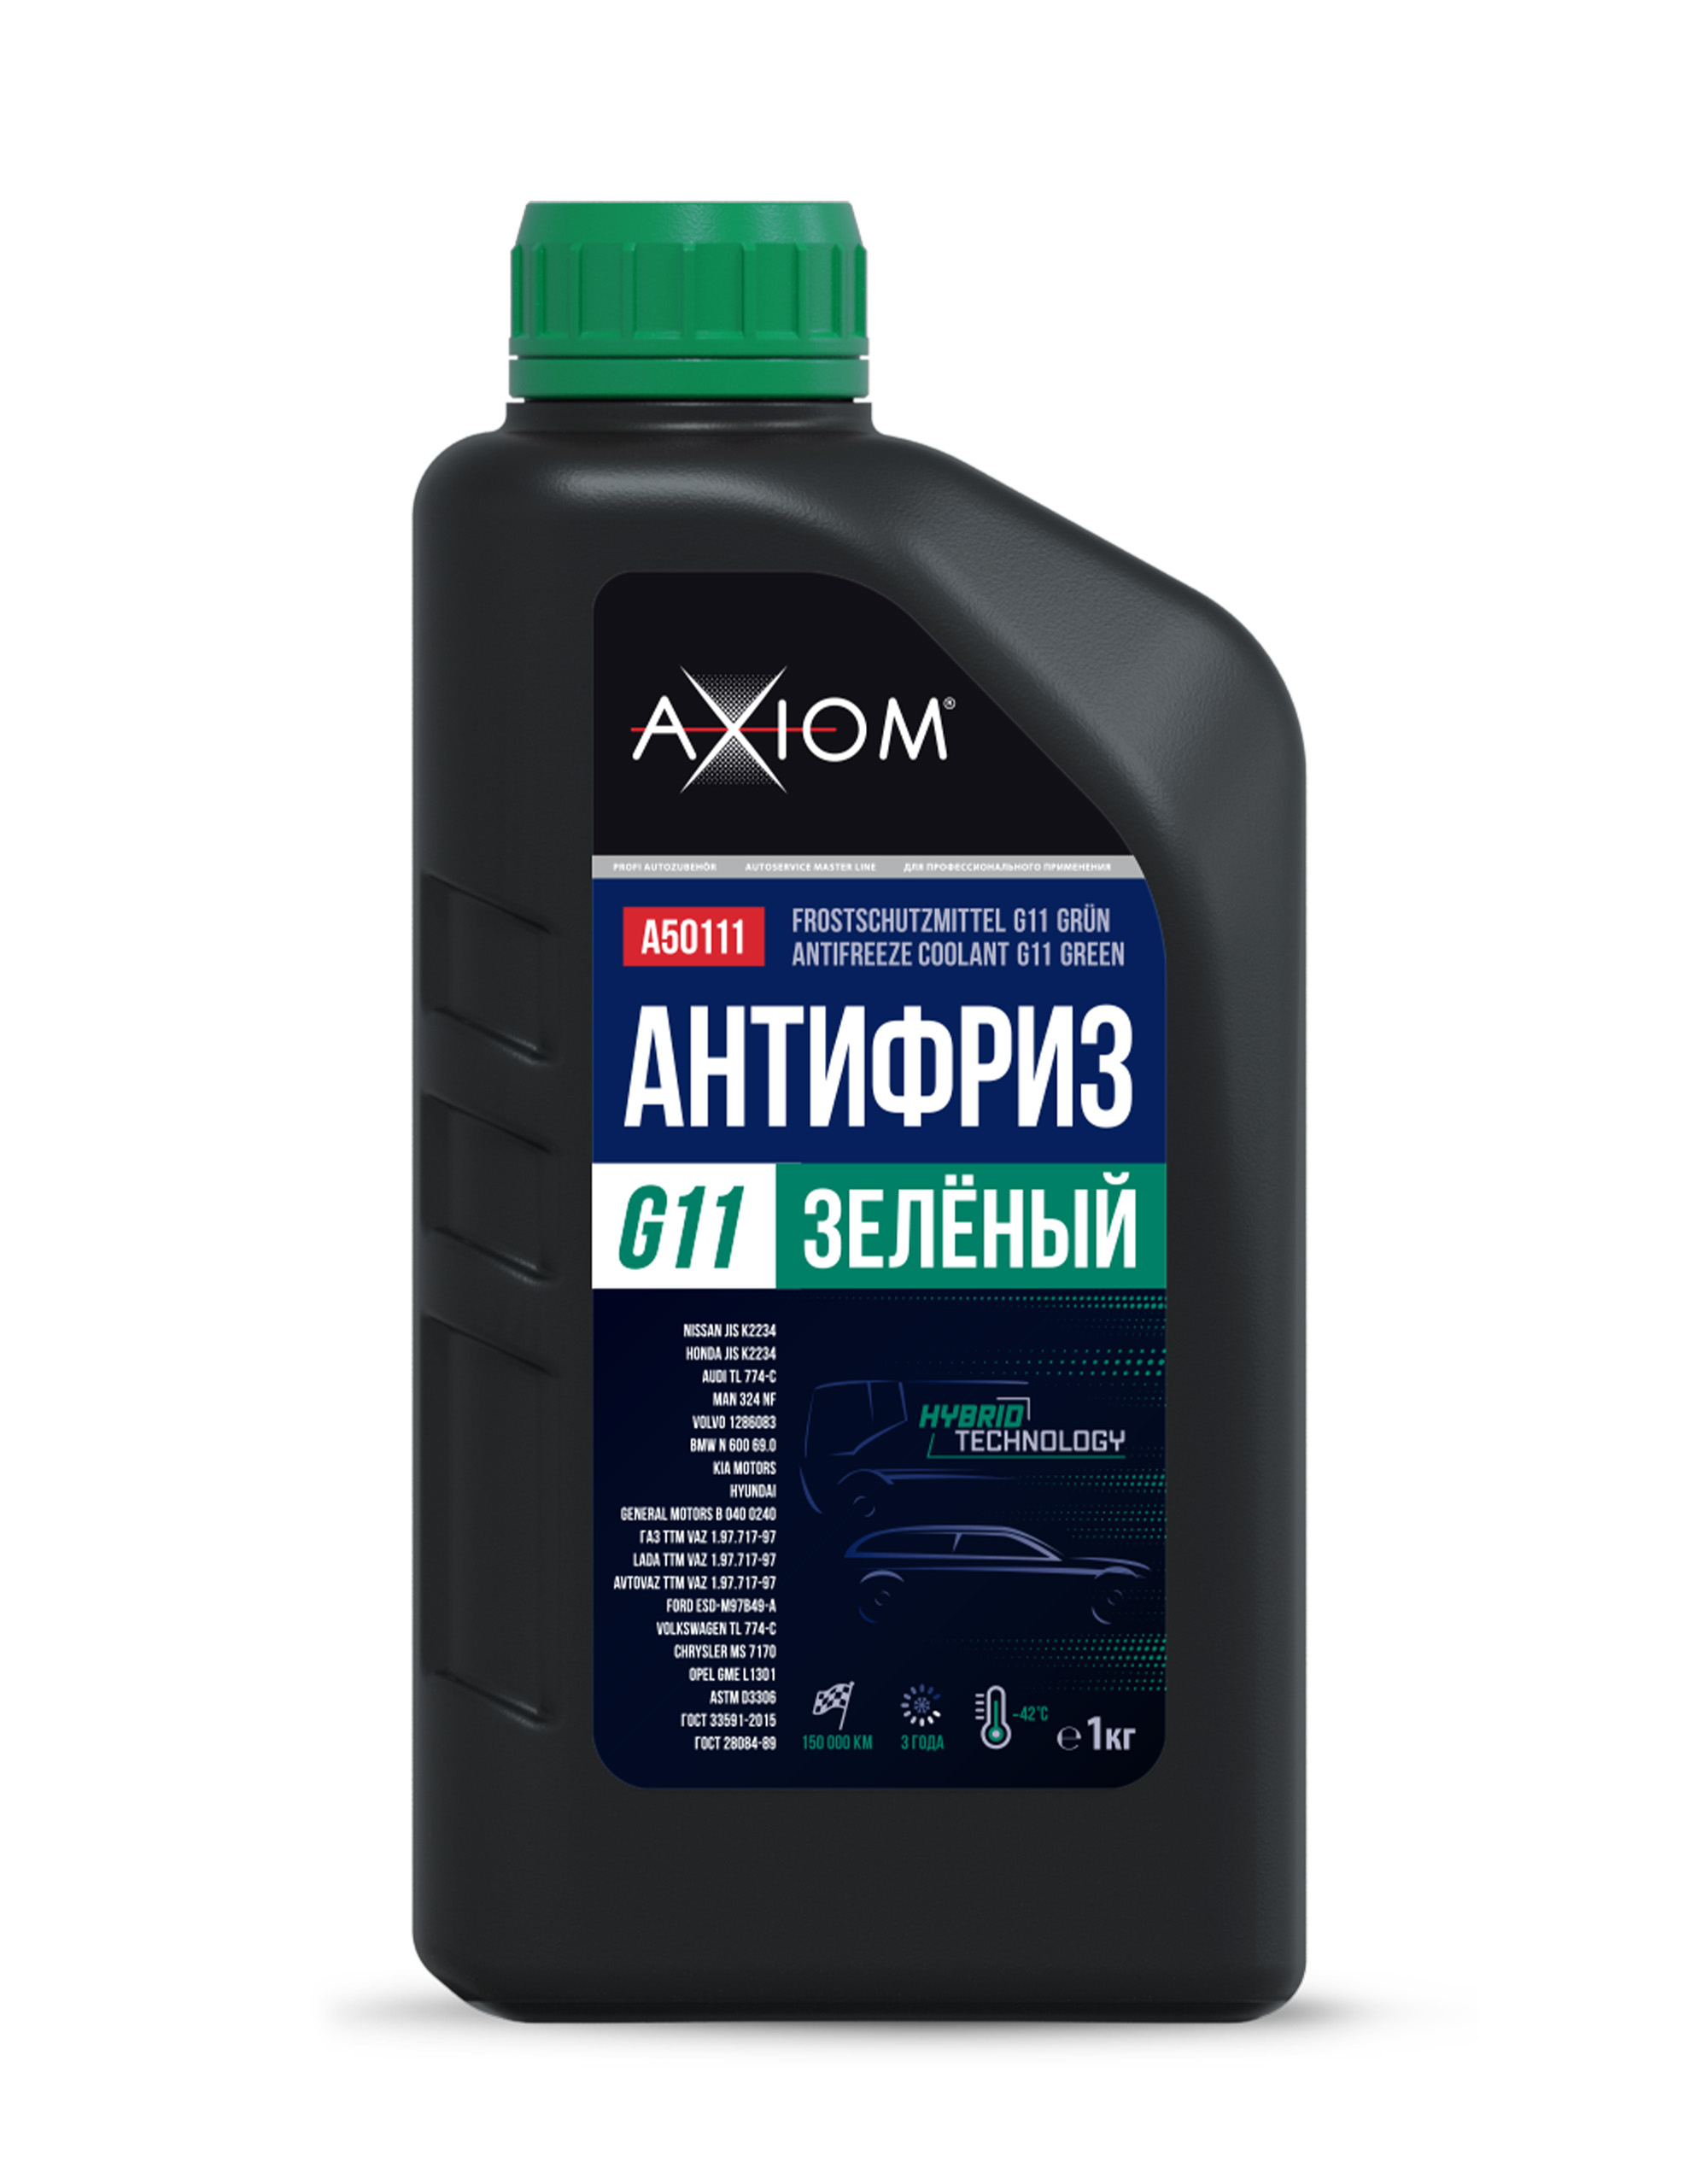 Антифриз G11 зелёный , готовый, 1 кг, до -42°c, 1 кг - AXIOM A50111